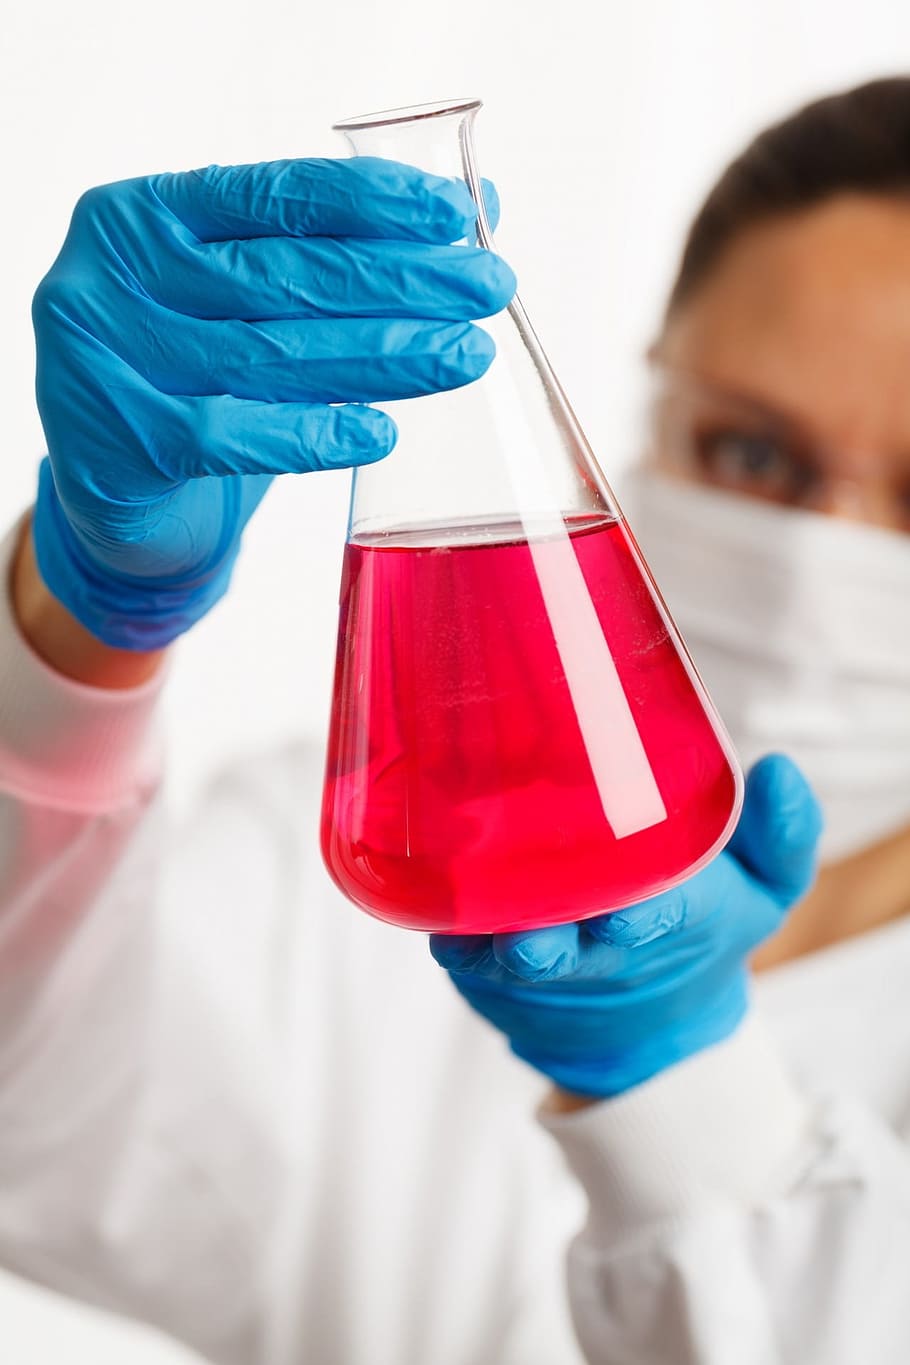 Persona, blanco, bata de laboratorio, azul, guantes, tenencia, claro, frasco de laboratorio de vidrio, rojo, líquido